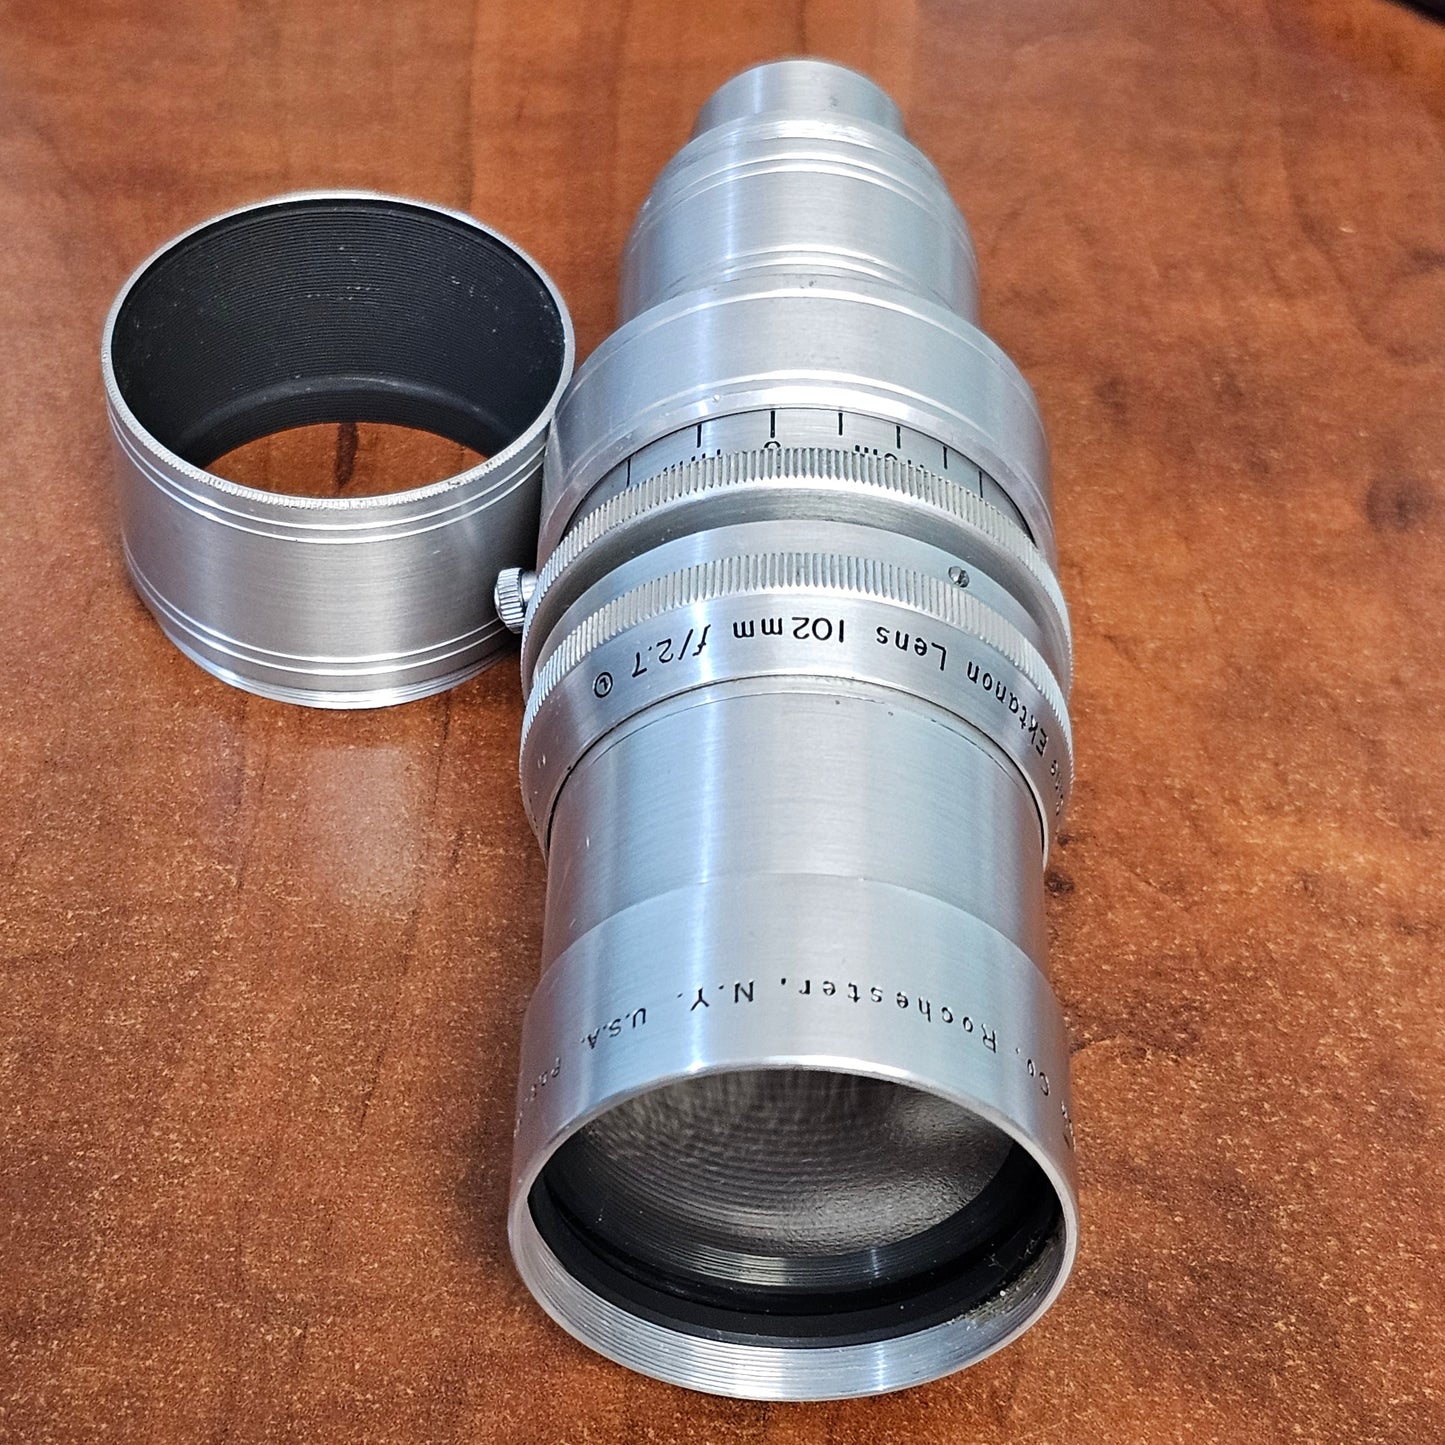 Kodak Cine Ektanon 102mm f2.7 Telephoto Lens